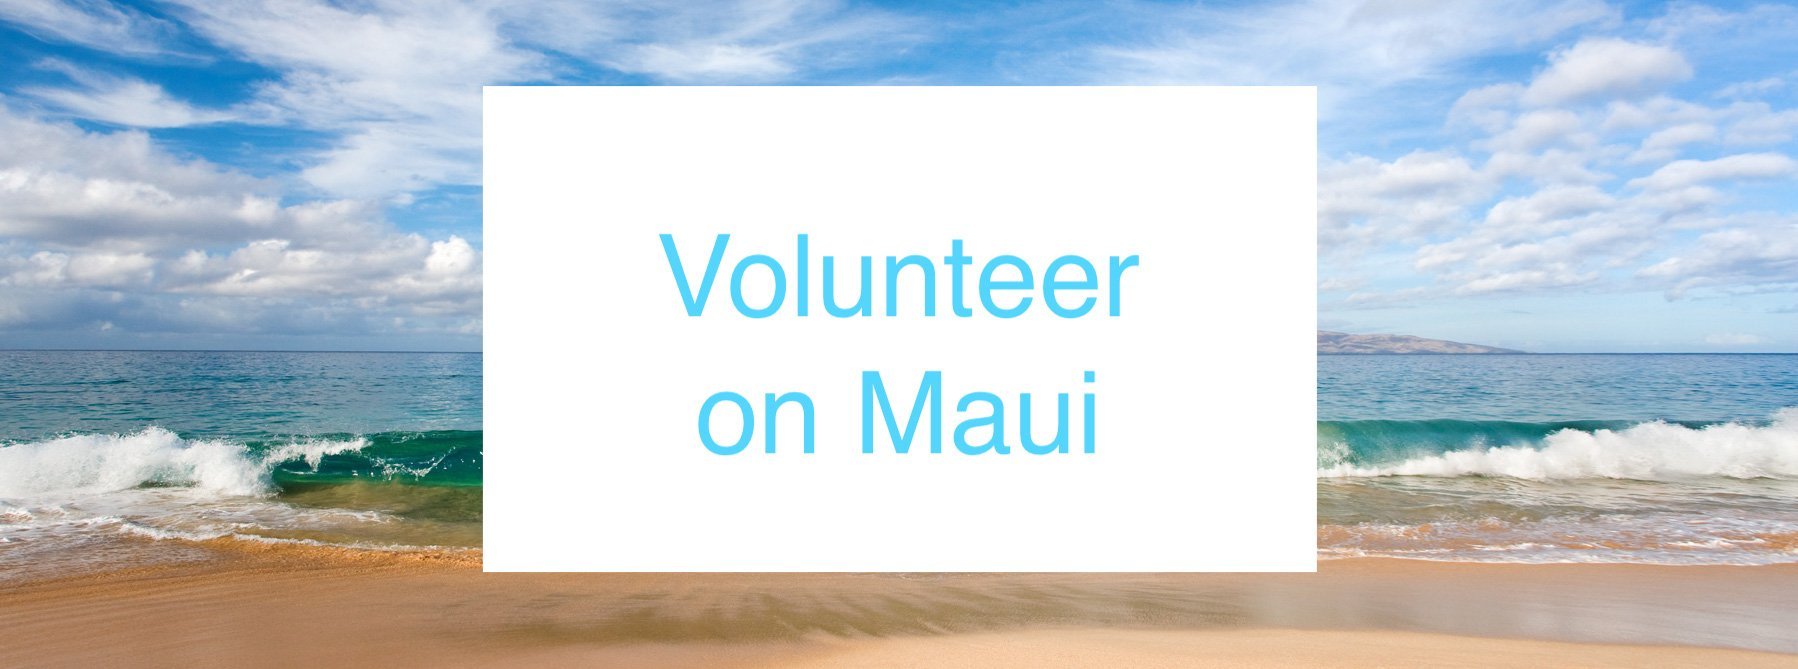 Volunteering on Maui